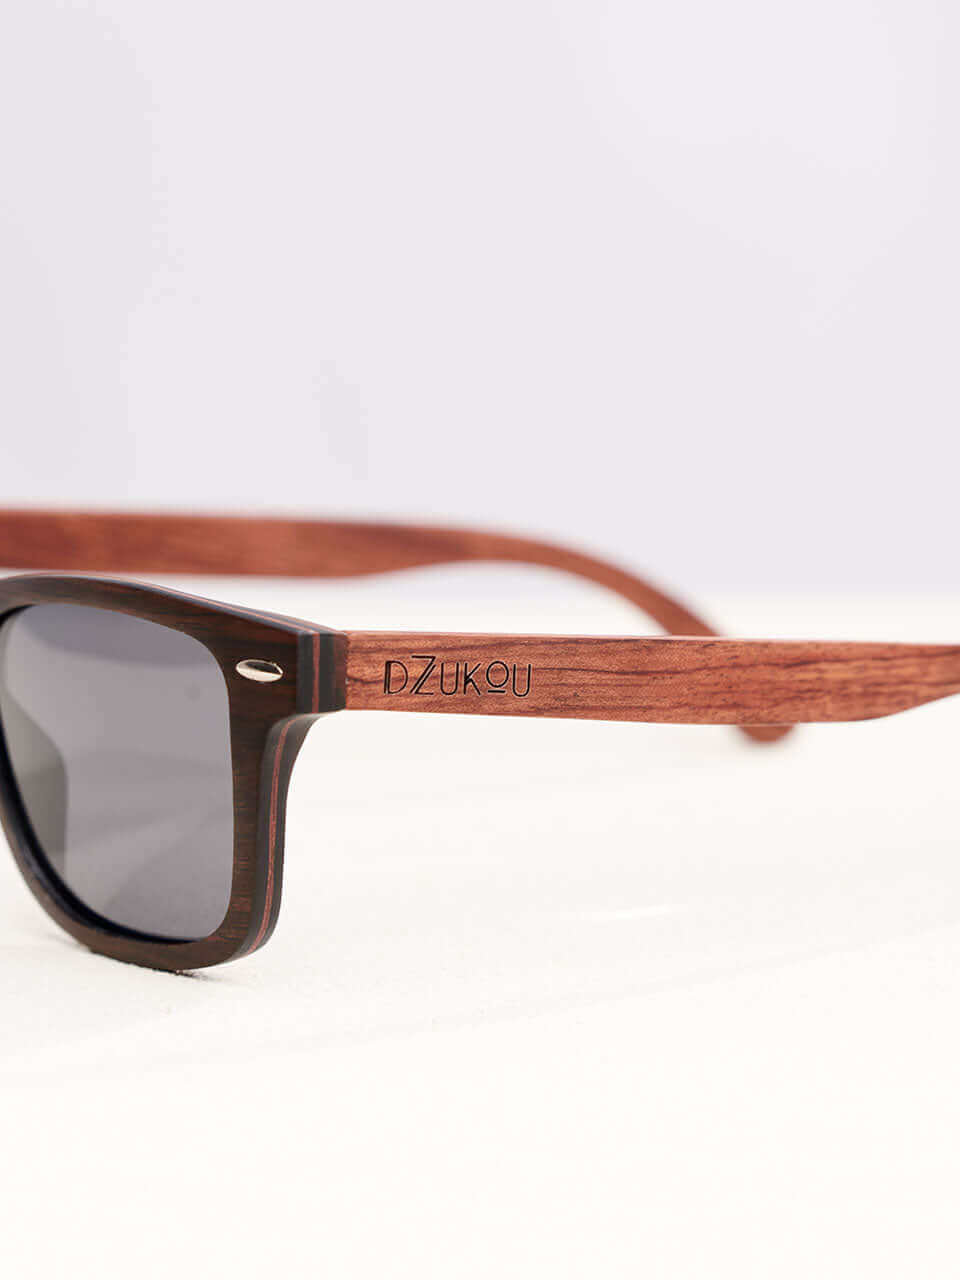 Reiek Peak - Wooden Sunglasses for Men